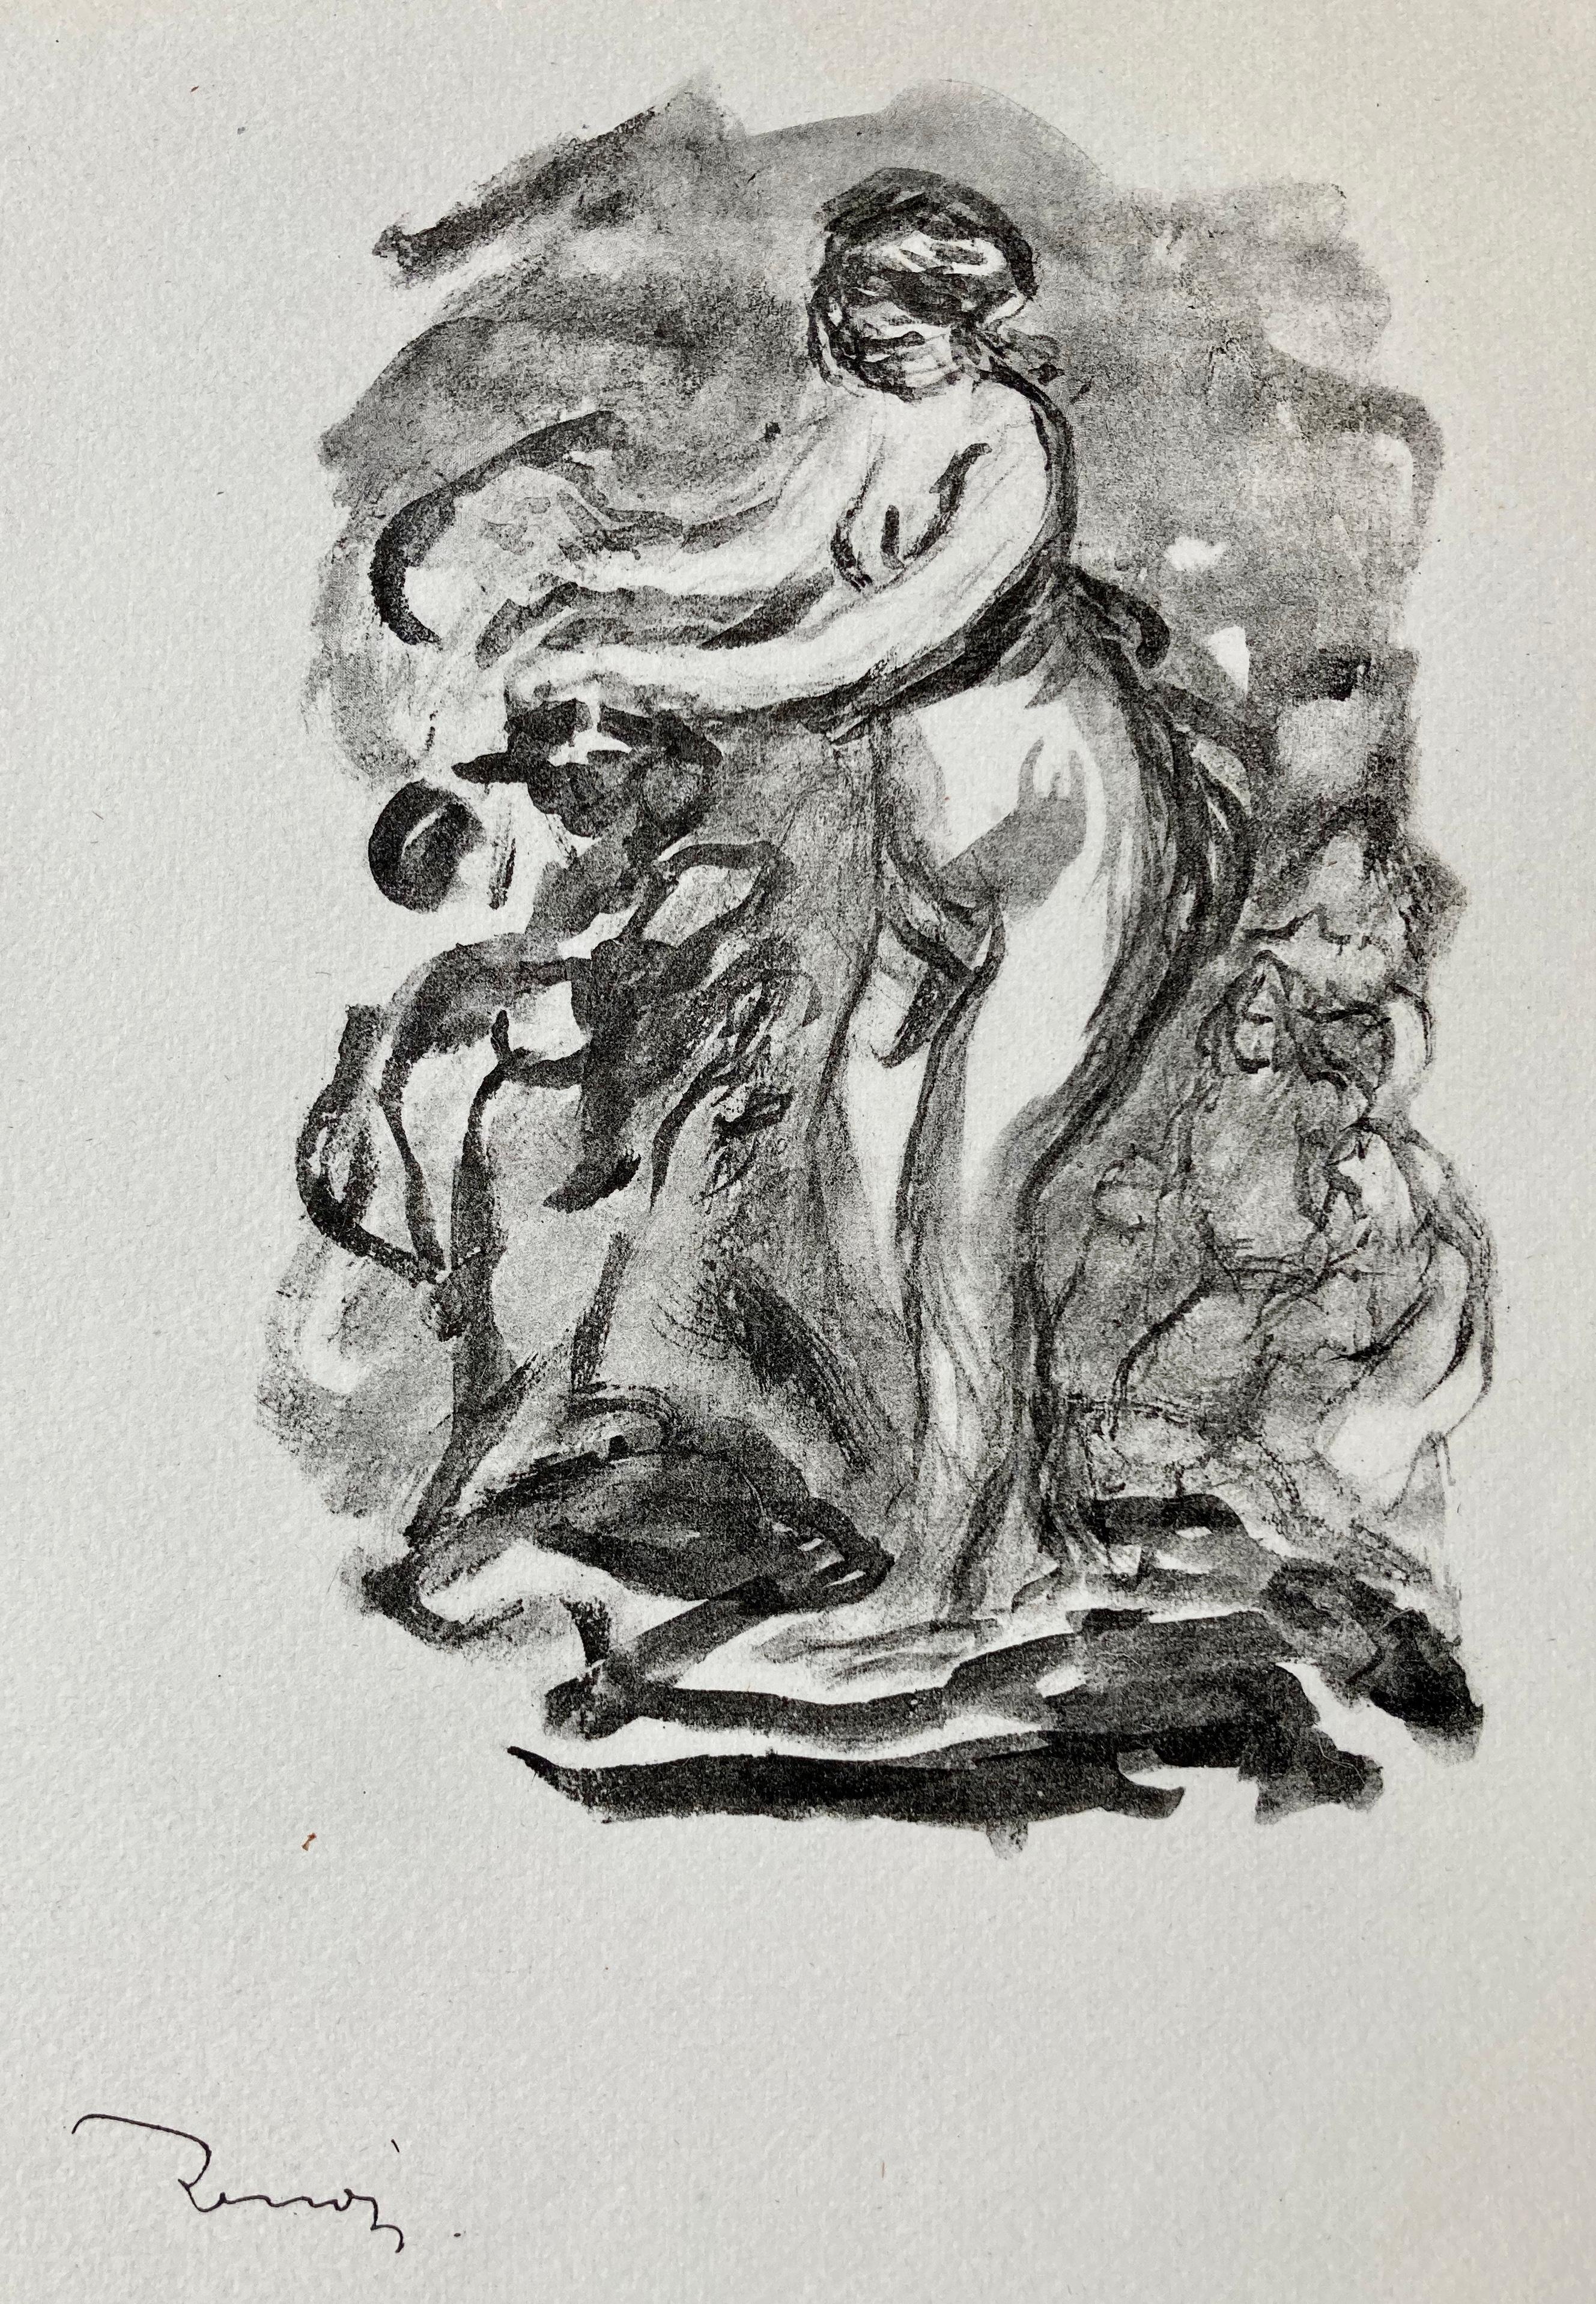 FEMME AU CEP DE VIGNE  (Woman By The Grapevine)  - Print by Pierre-Auguste Renoir